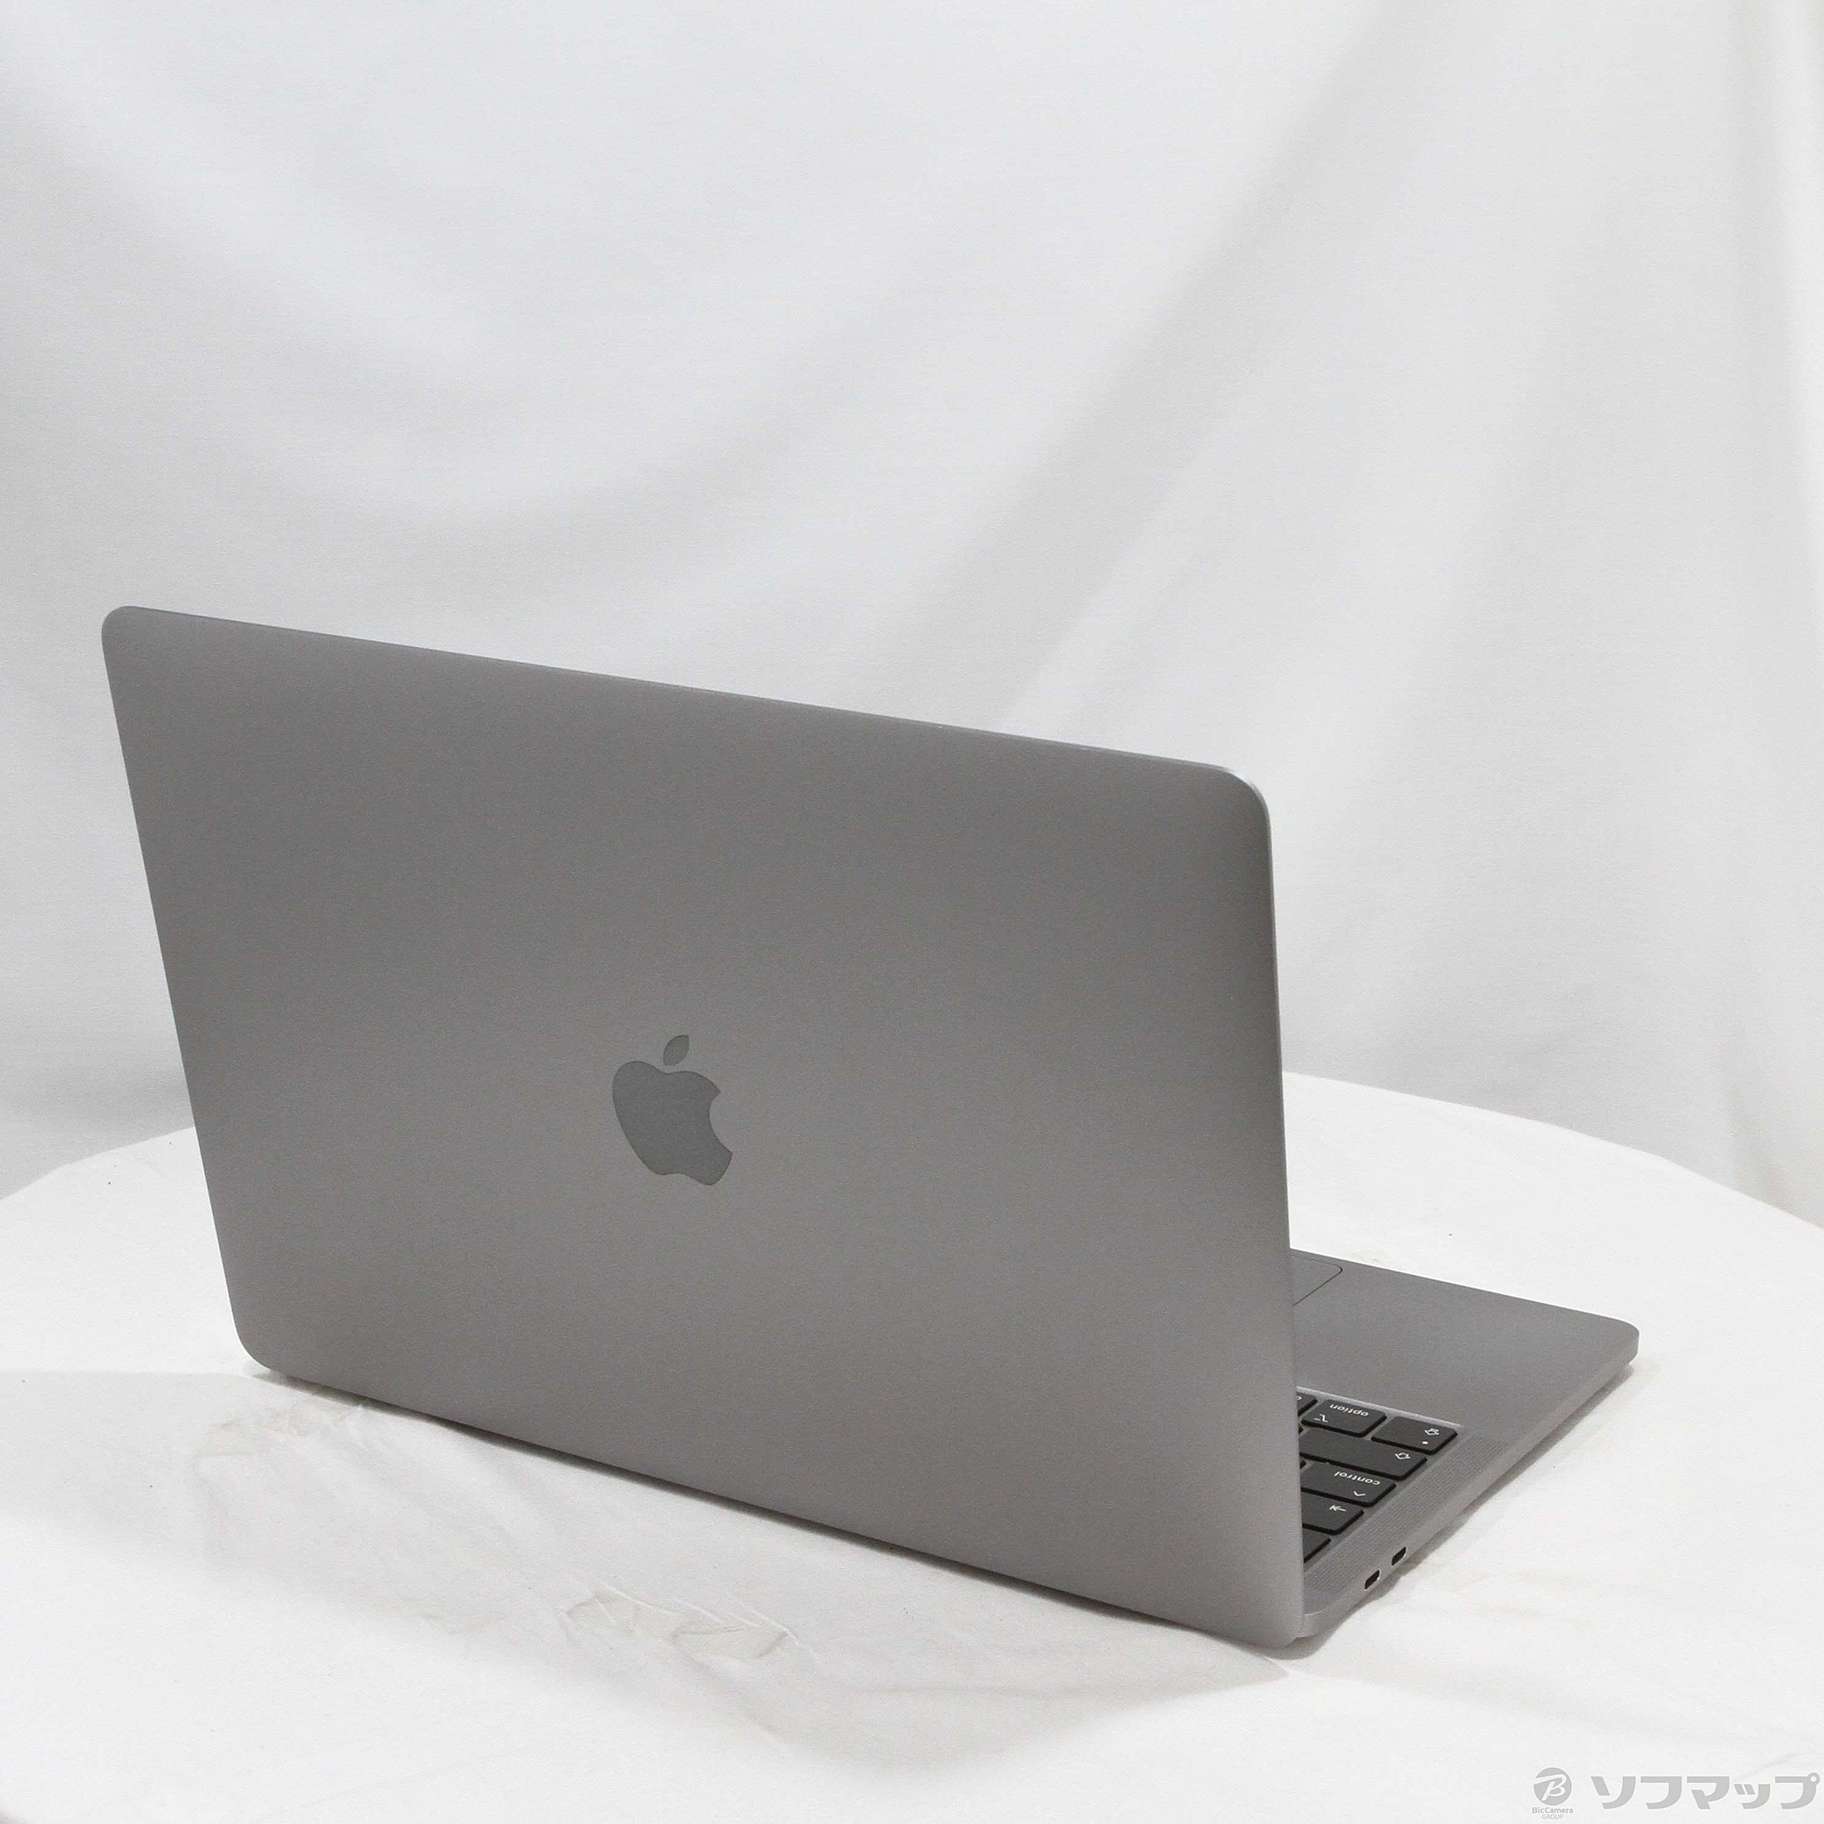 限定版 【タイムセール中】MacBook Pro 13.3 MYD92J/A … スマホ 